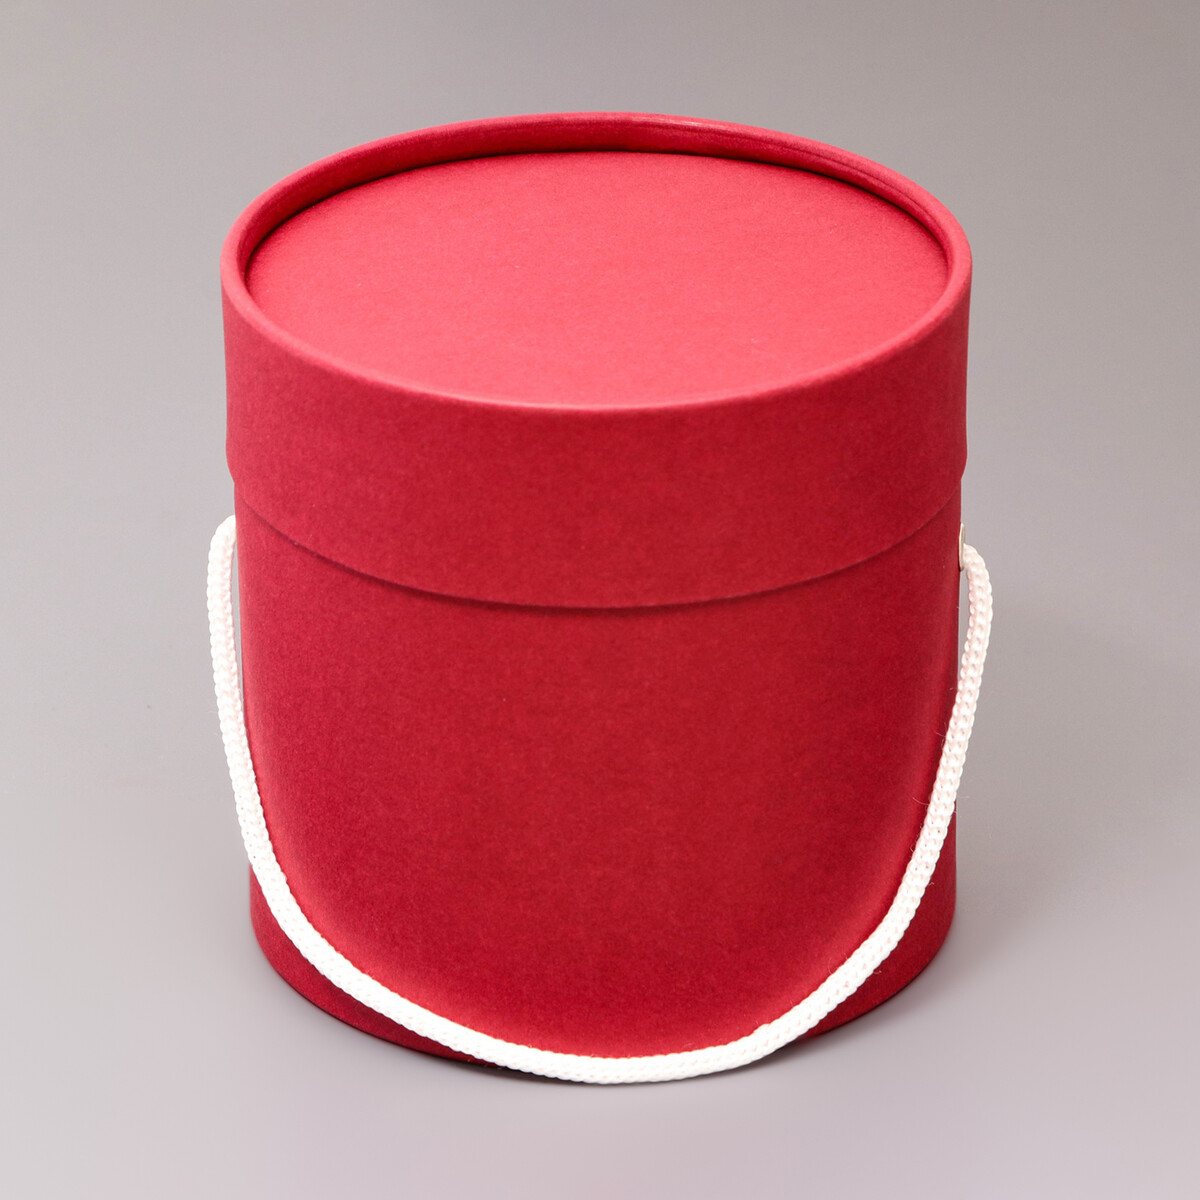 Подарочная коробка, круглая, бордовая,с шнурком, 12 х 12 см круглая подарочная коробка